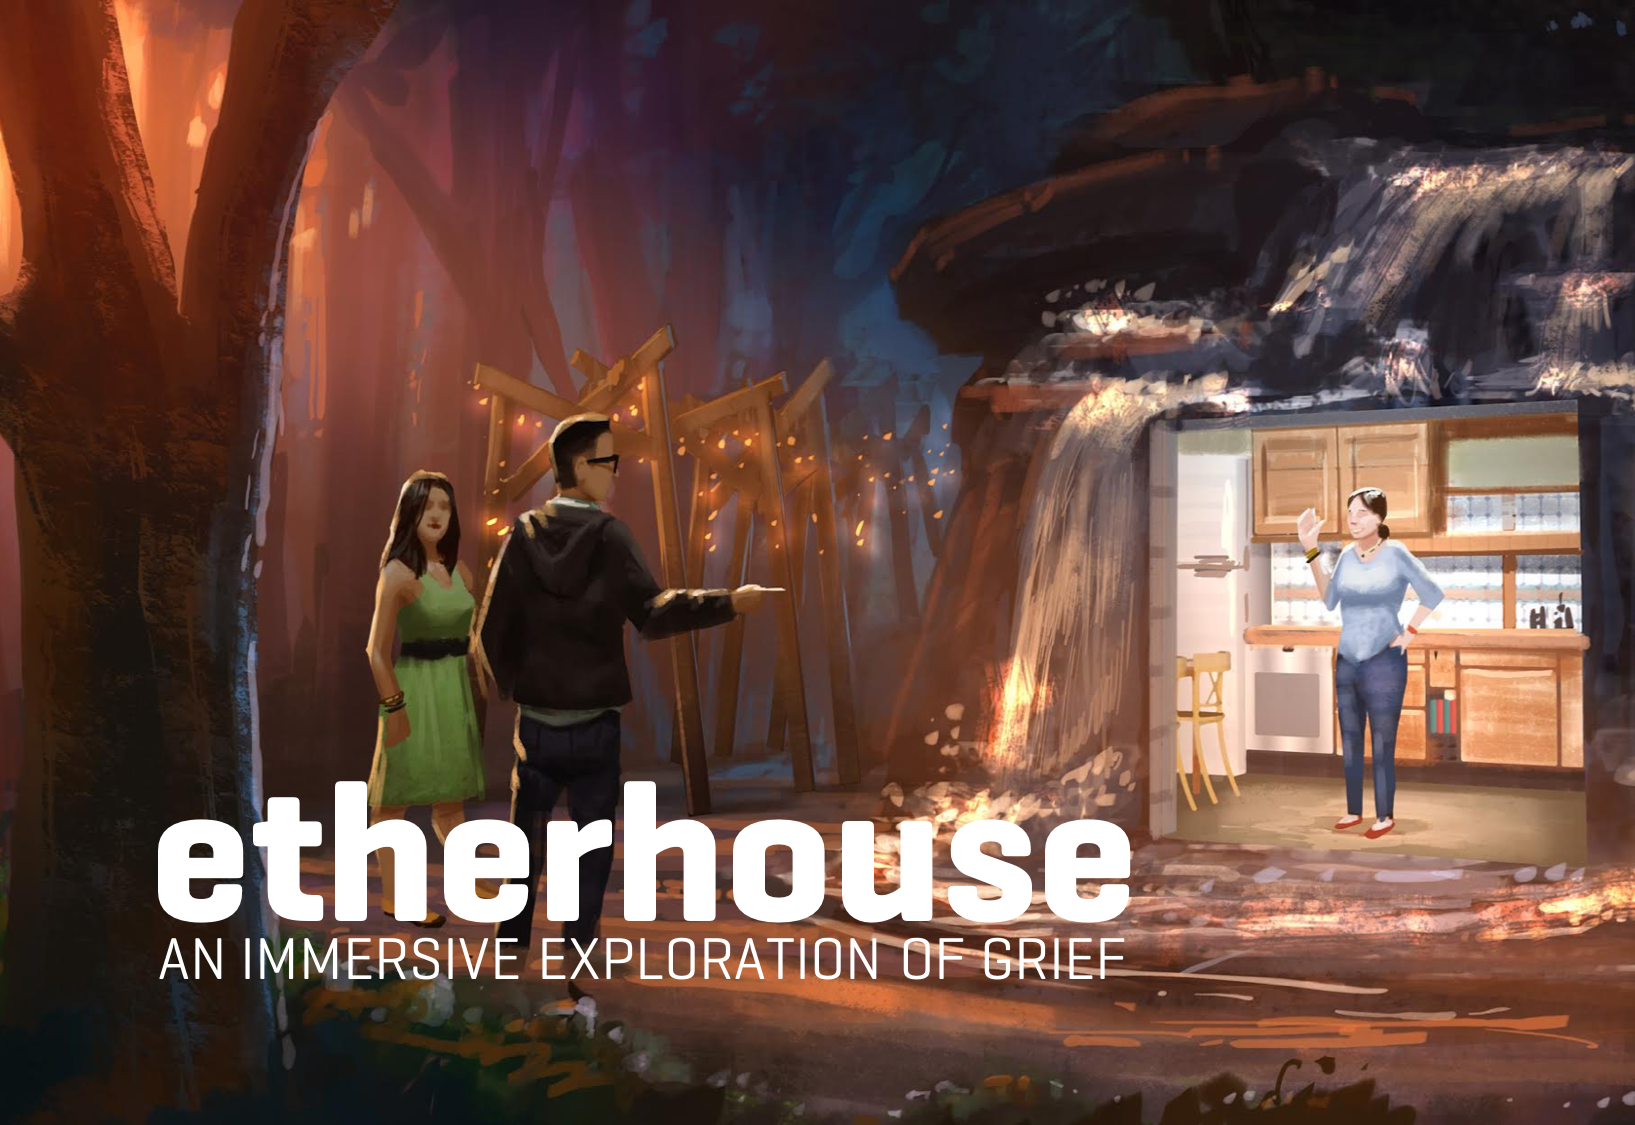 Etherhouse at LACMA